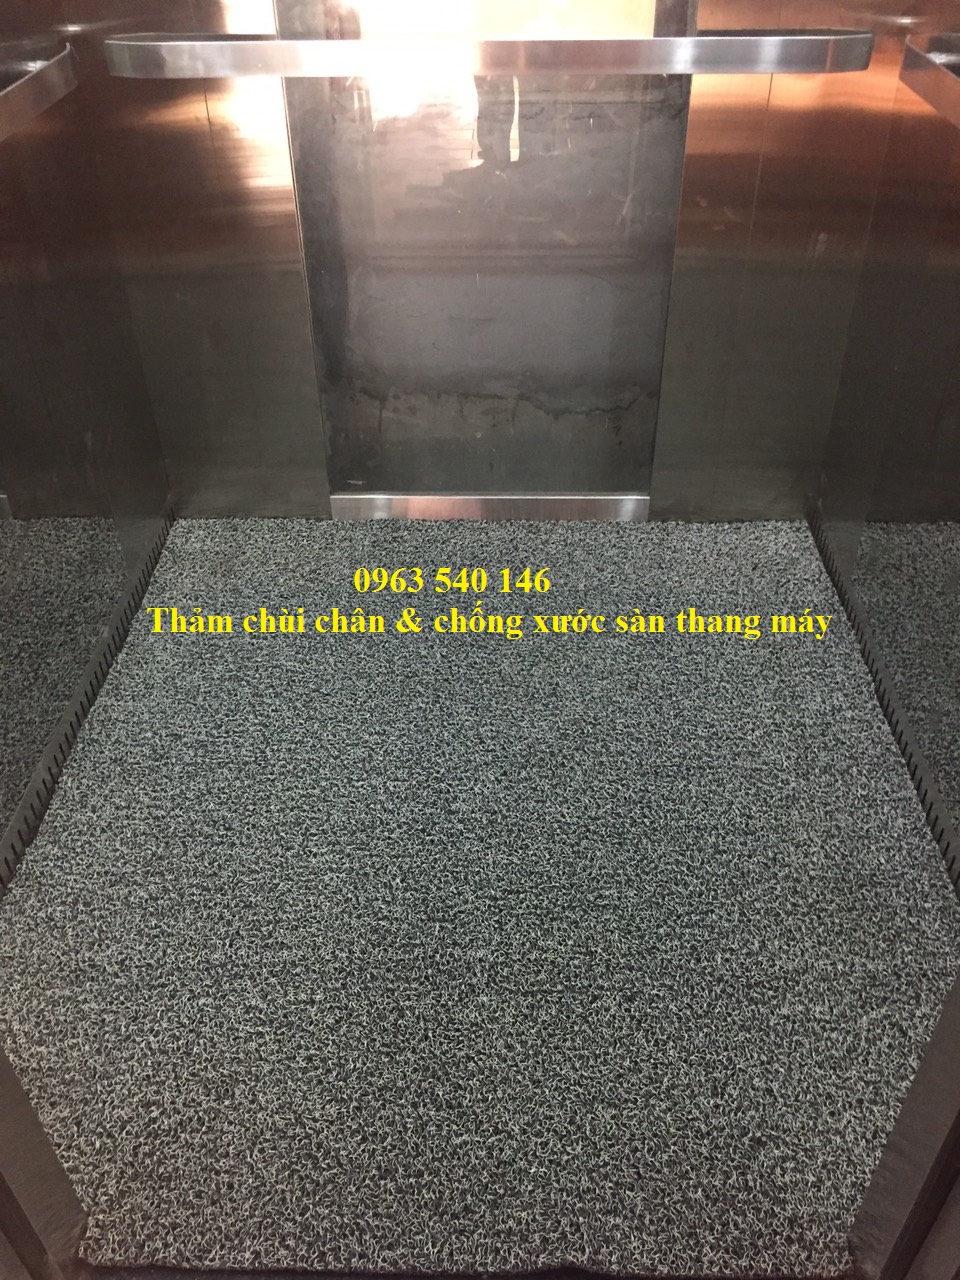 Tấm thảm đặt bên trong thang máy đẹp, sang trọng, đặc biệt bảo vệ mặt sàn thang máy.